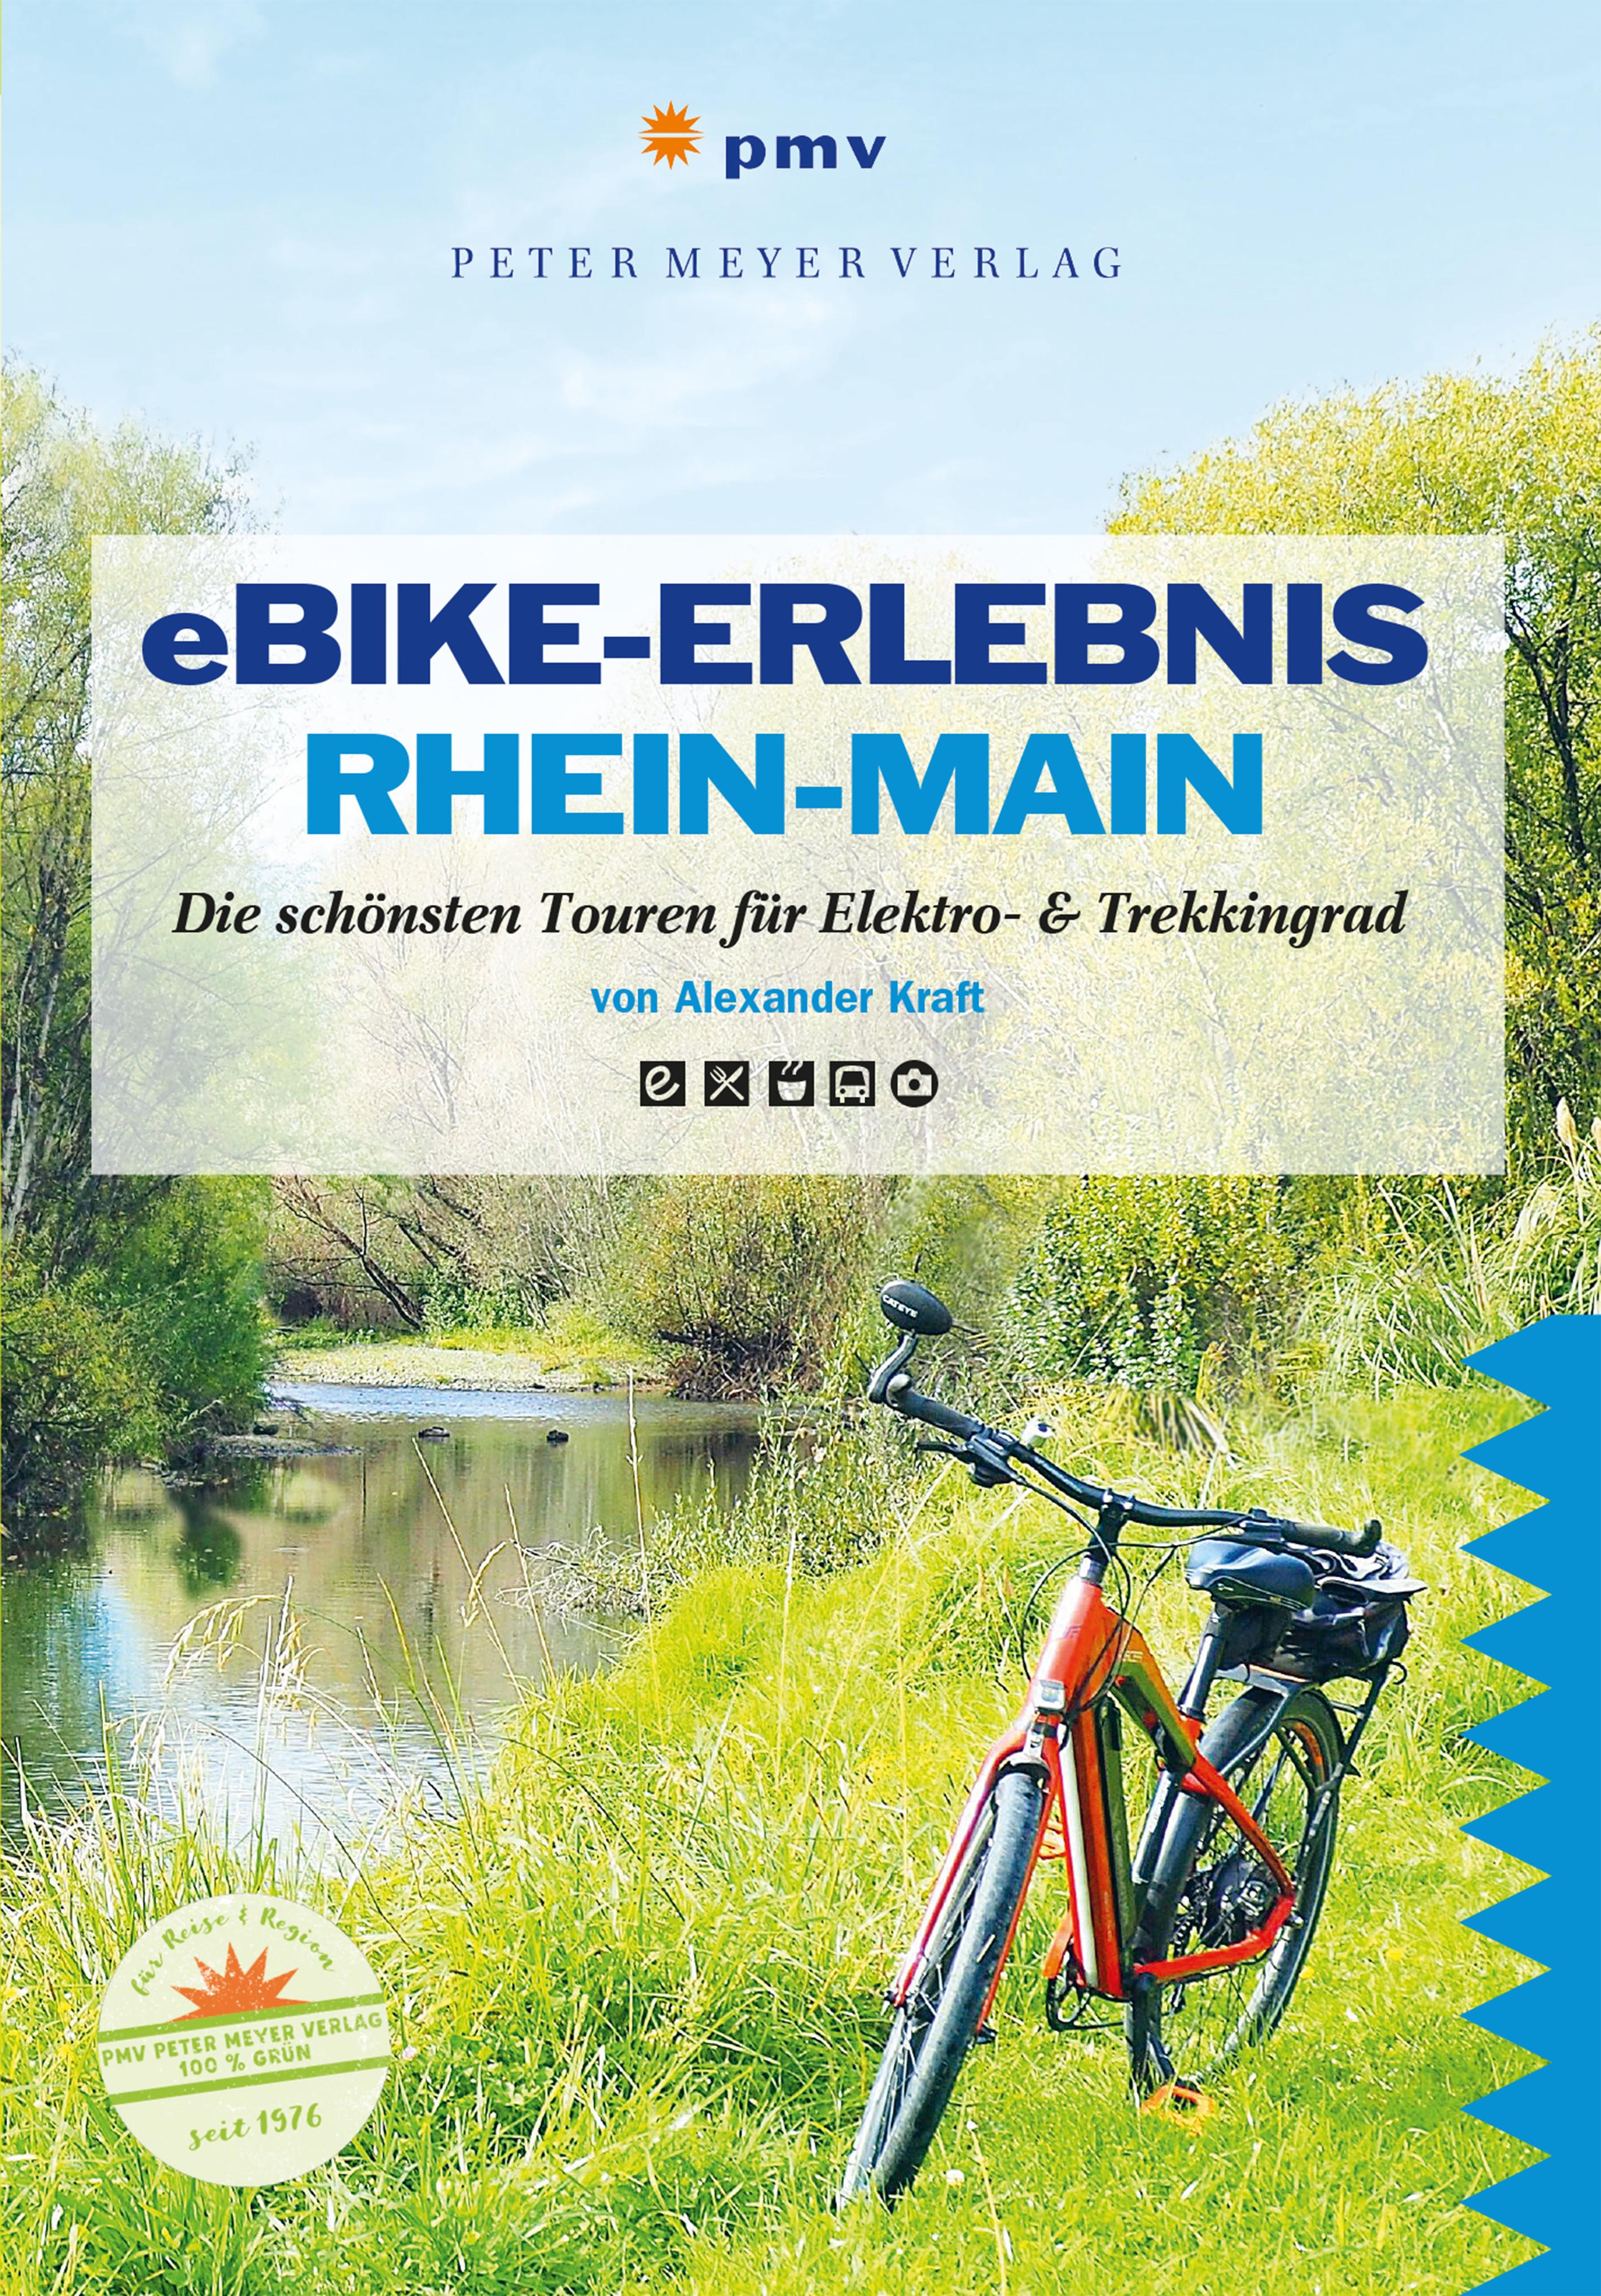 eBike-Erlebnis Rhein-Main, mit 1 Online-Zugang, mit 1 Beilage Die schönsten Touren mit Elektro- & Trekkingrad